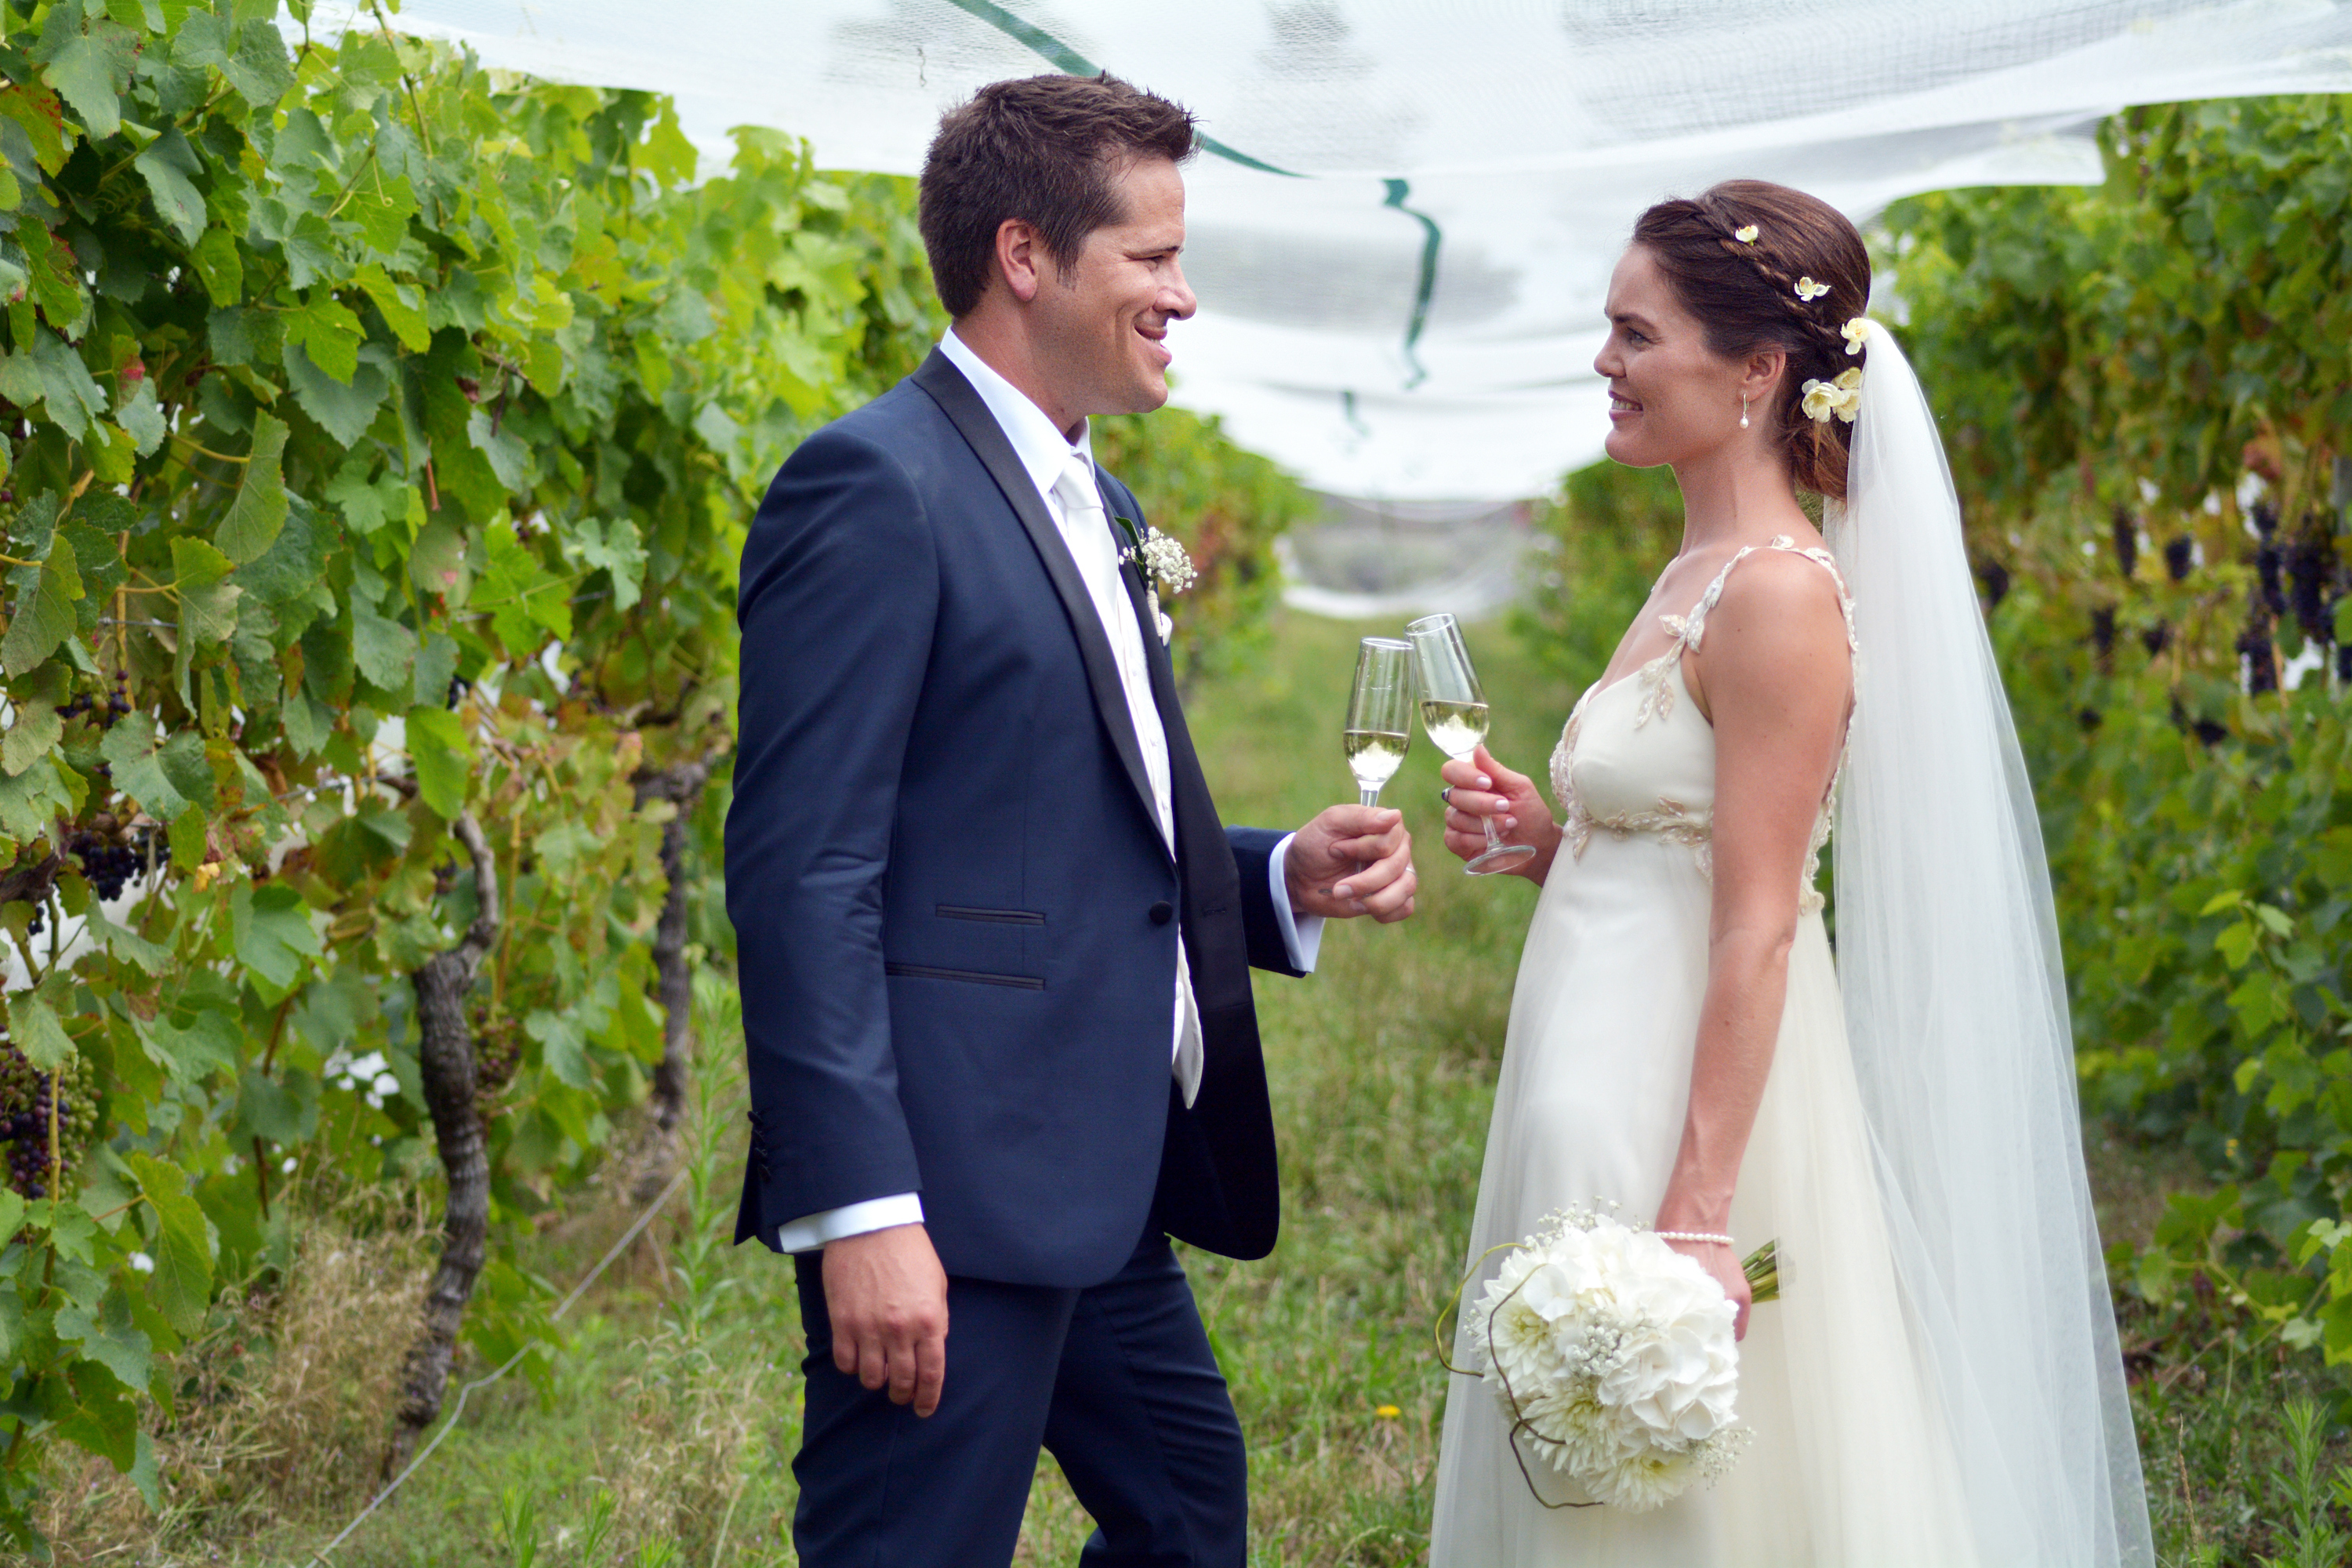 Small Wedding ideas for a small long island wedding - vineyard wedding ideas